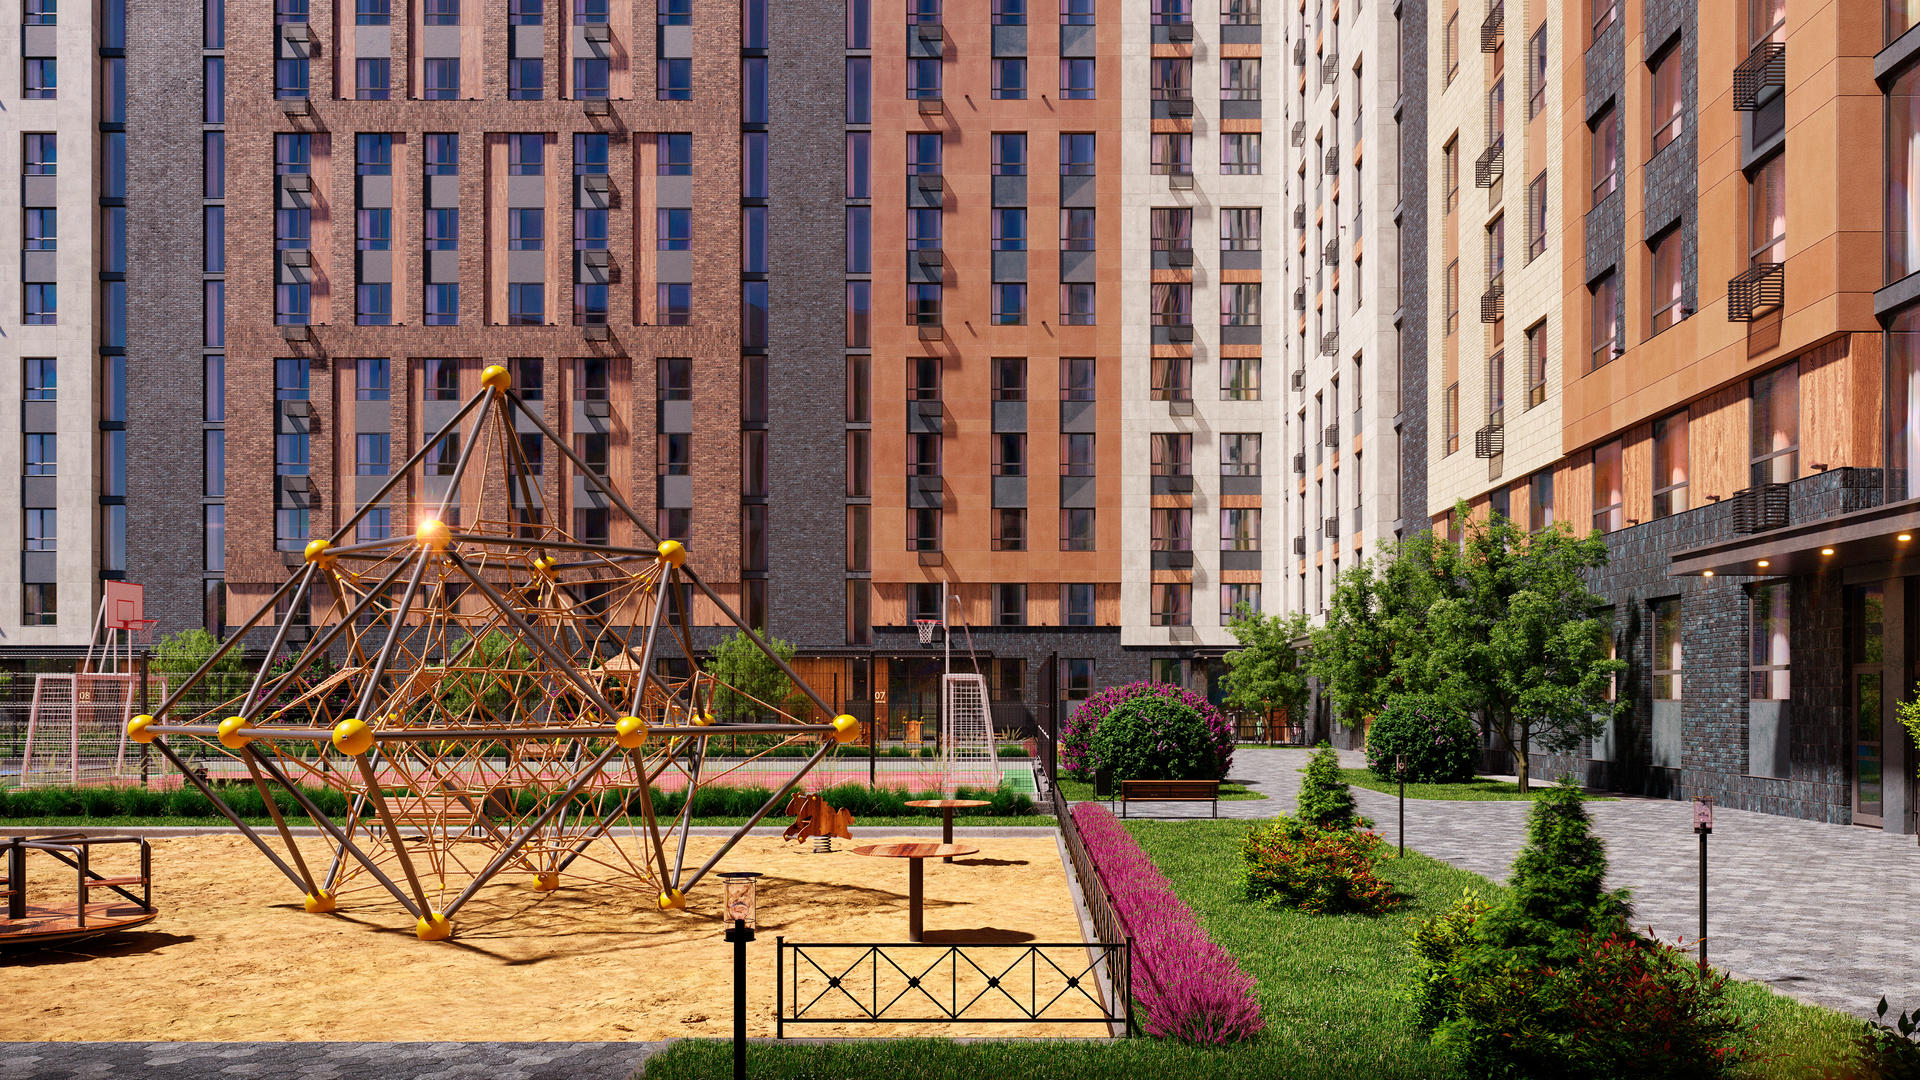 Продам квартиру в Москве по адресу жилой комплекс Эко Бунино, 142, площадь 3274 квм Недвижимость Москва (Россия)  Внутри района есть облагороженная ландшафтная зона для прогулок и пикников, а также оборудованная набережная